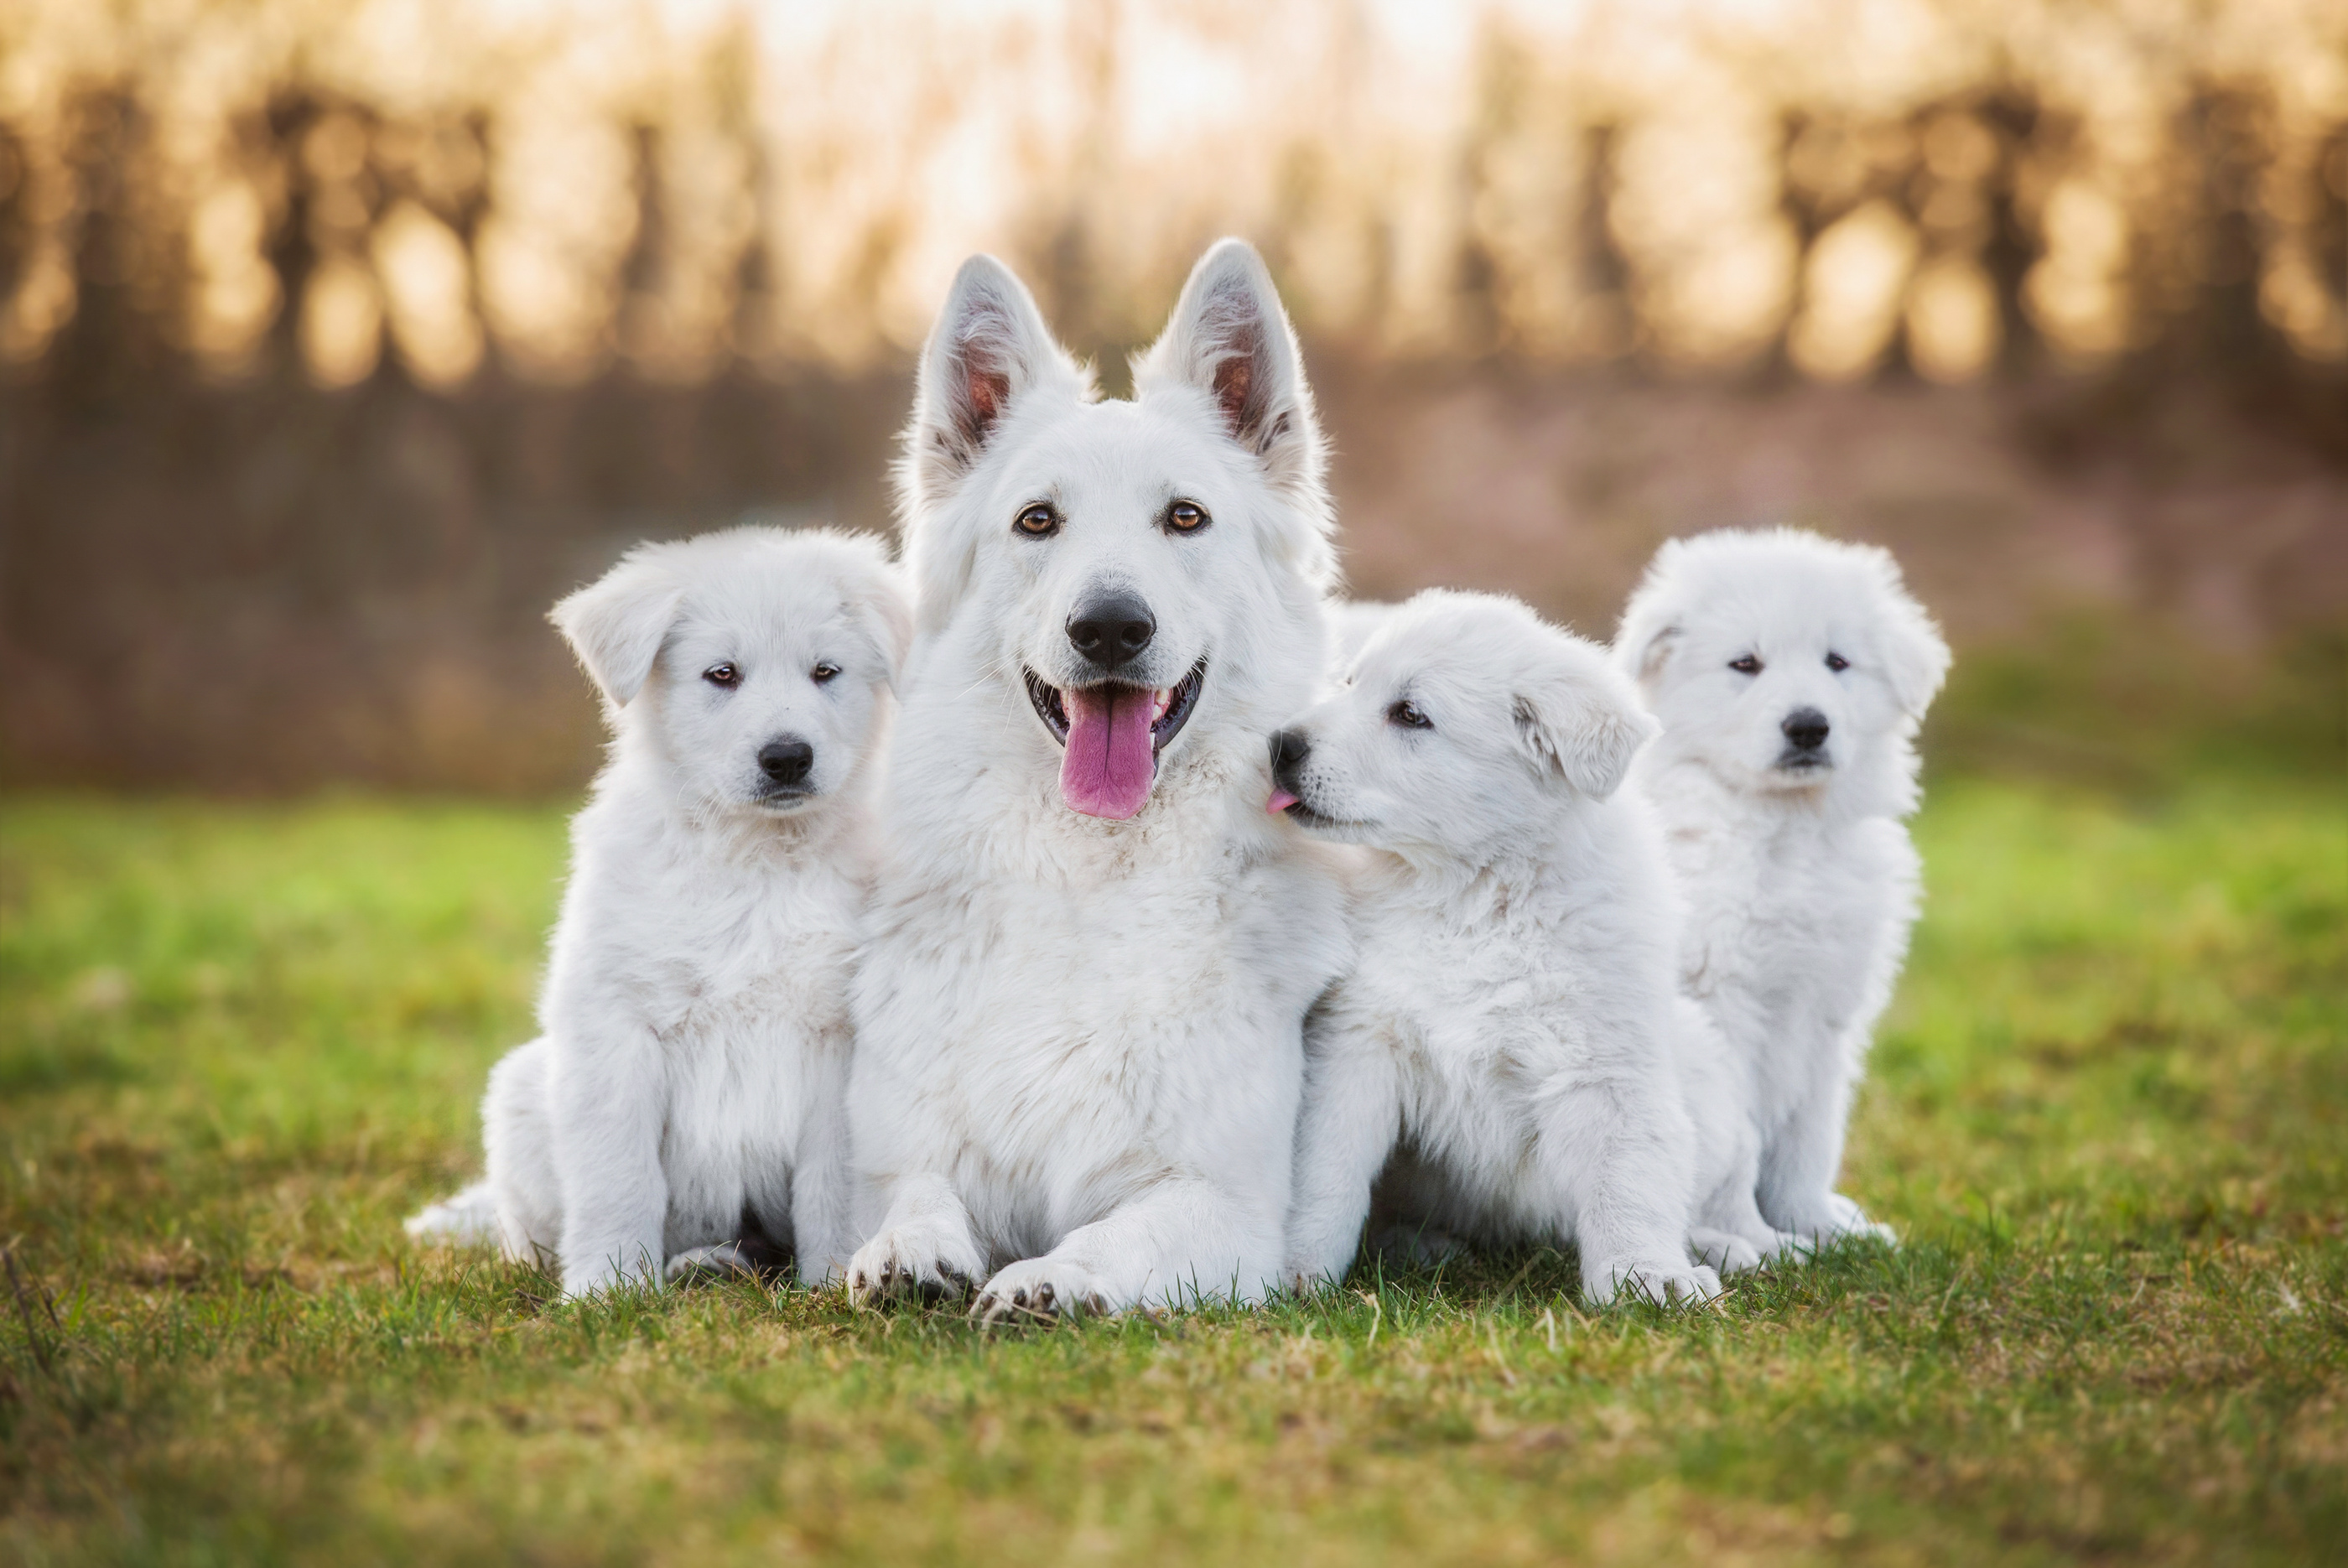 White swiss shepherd with puppies